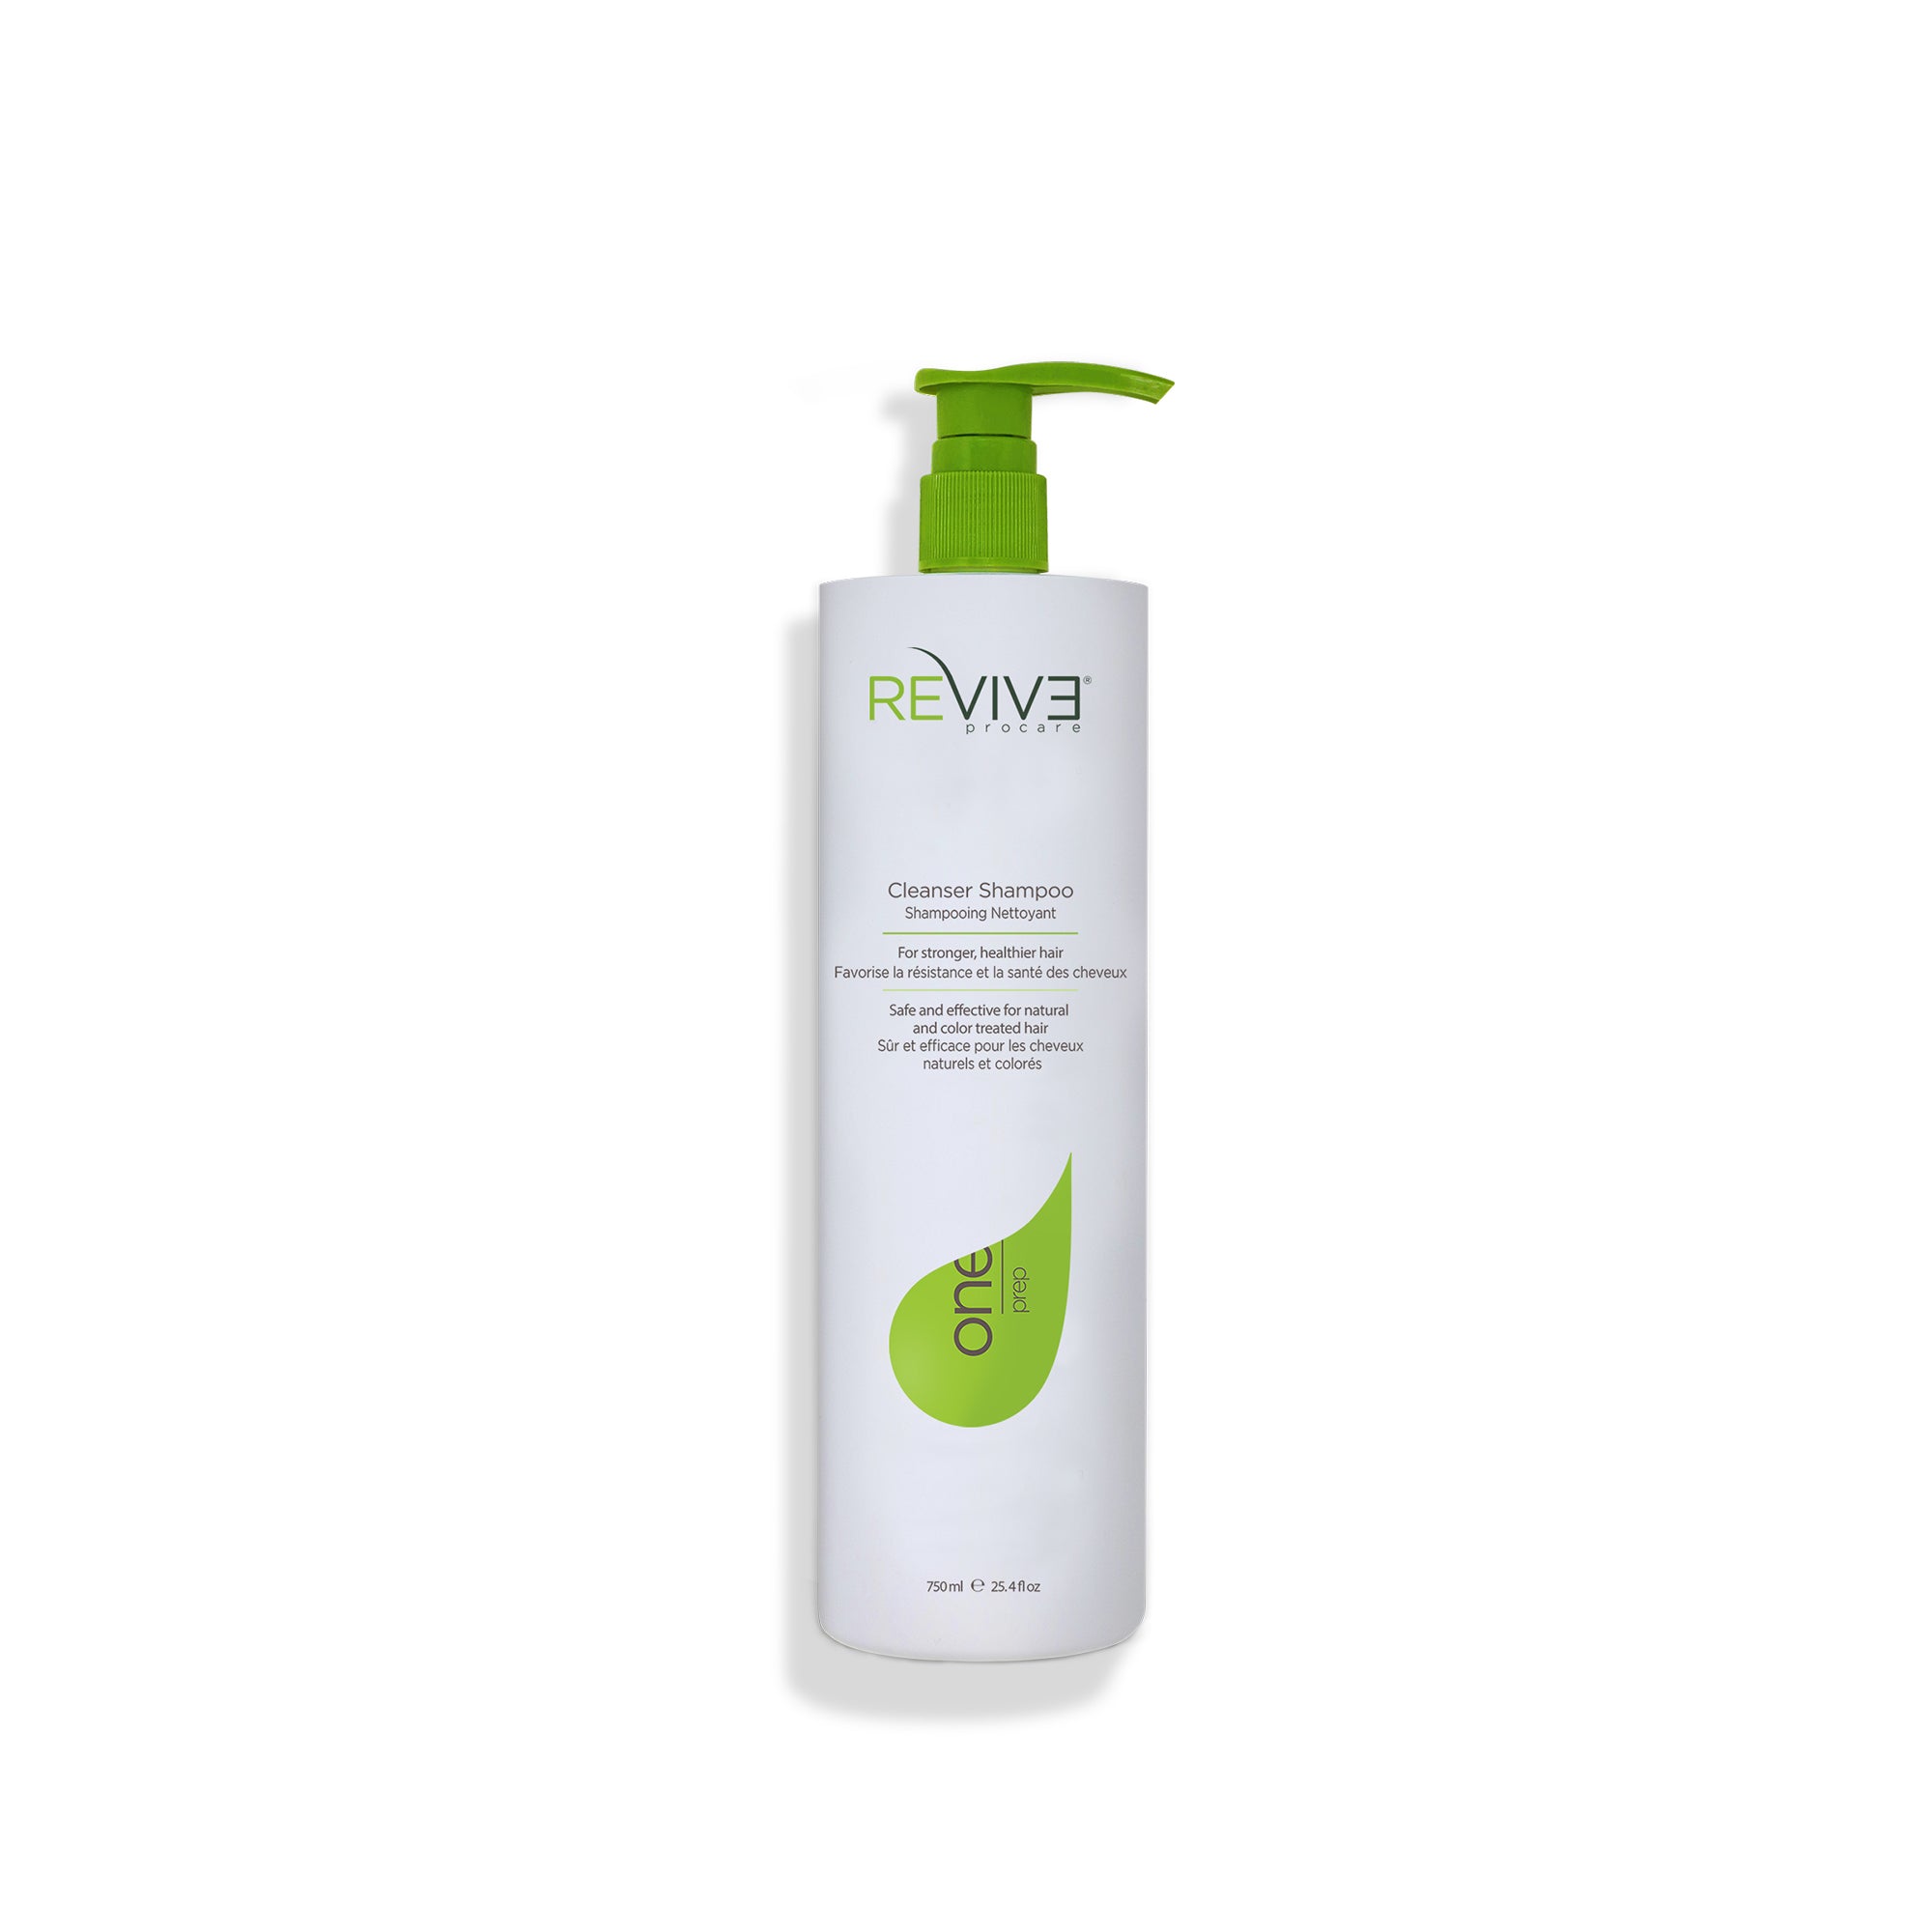 PREP Cleanser Shampoo - 25.4 oz – Reviv3 Procare